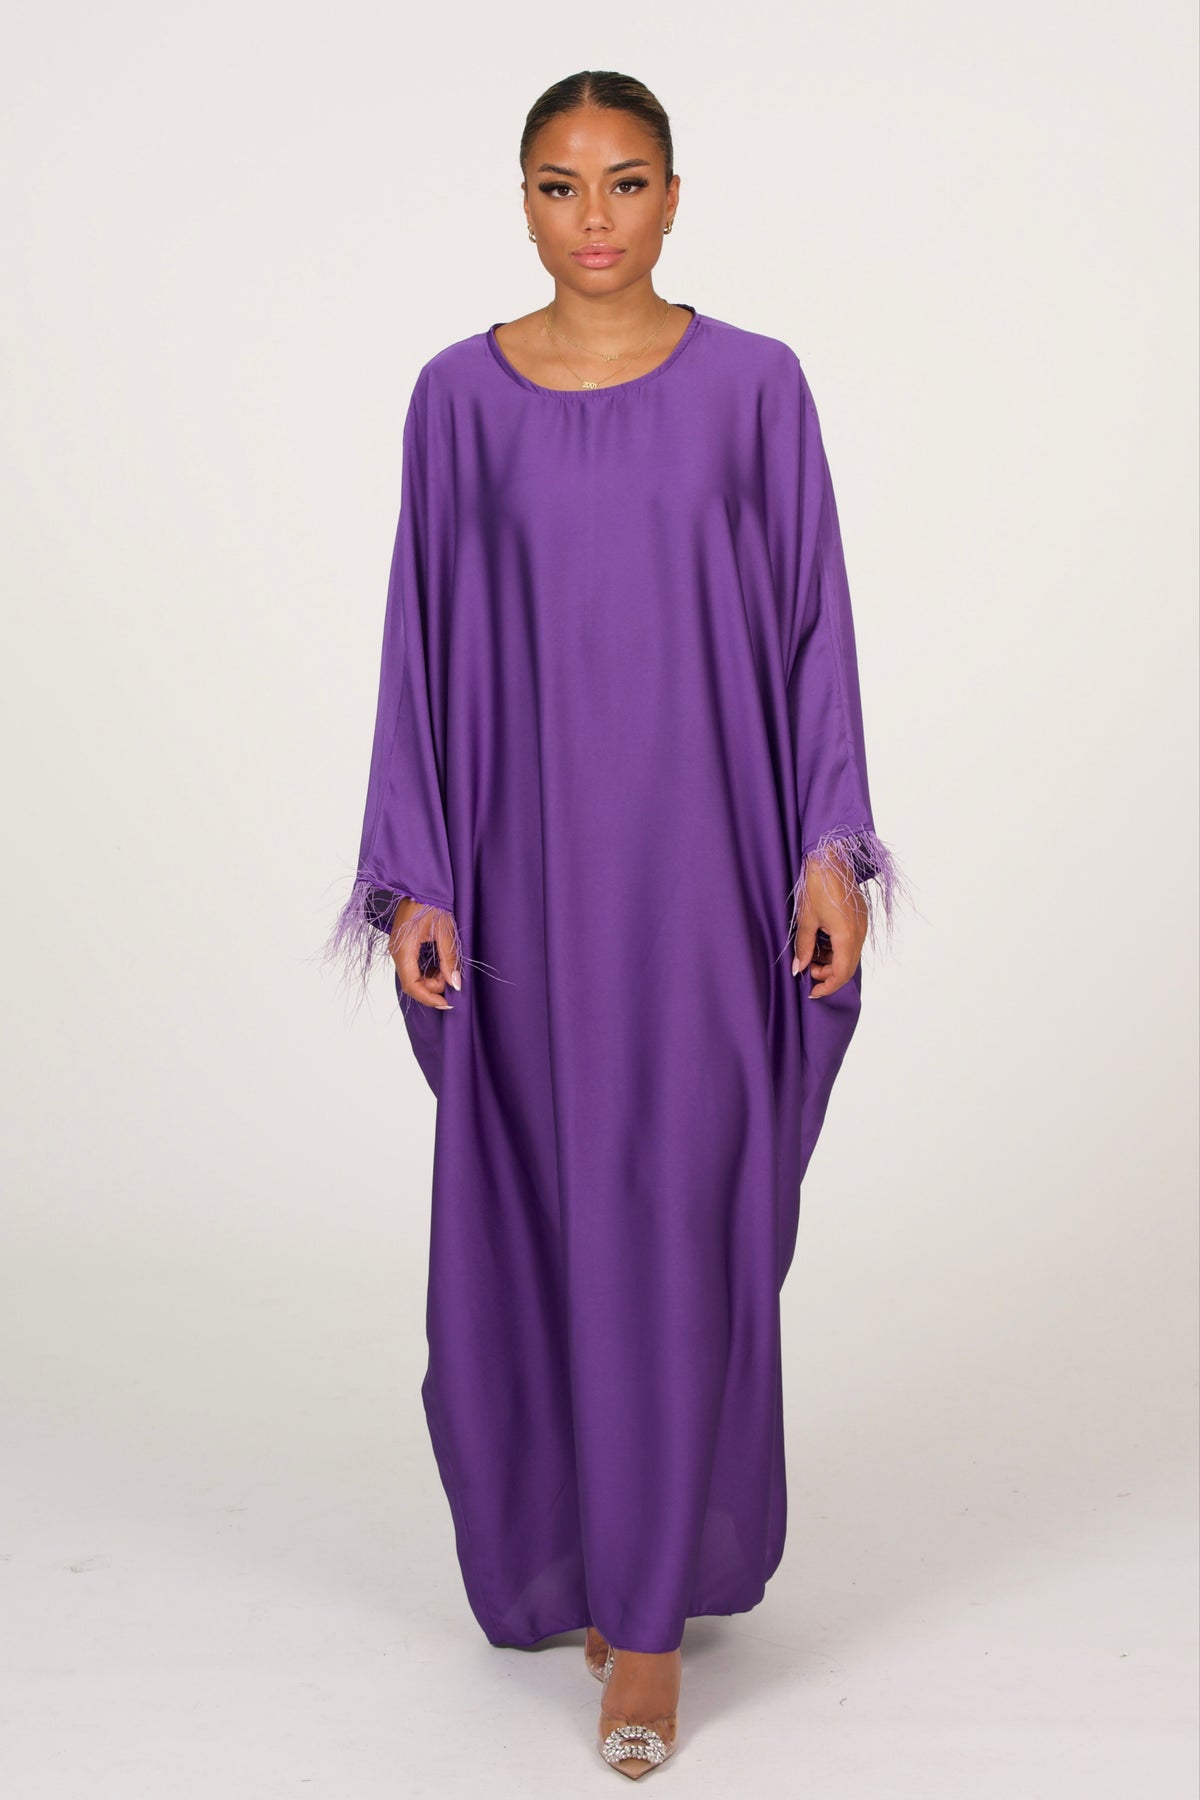 Oversized Abaya With Fur